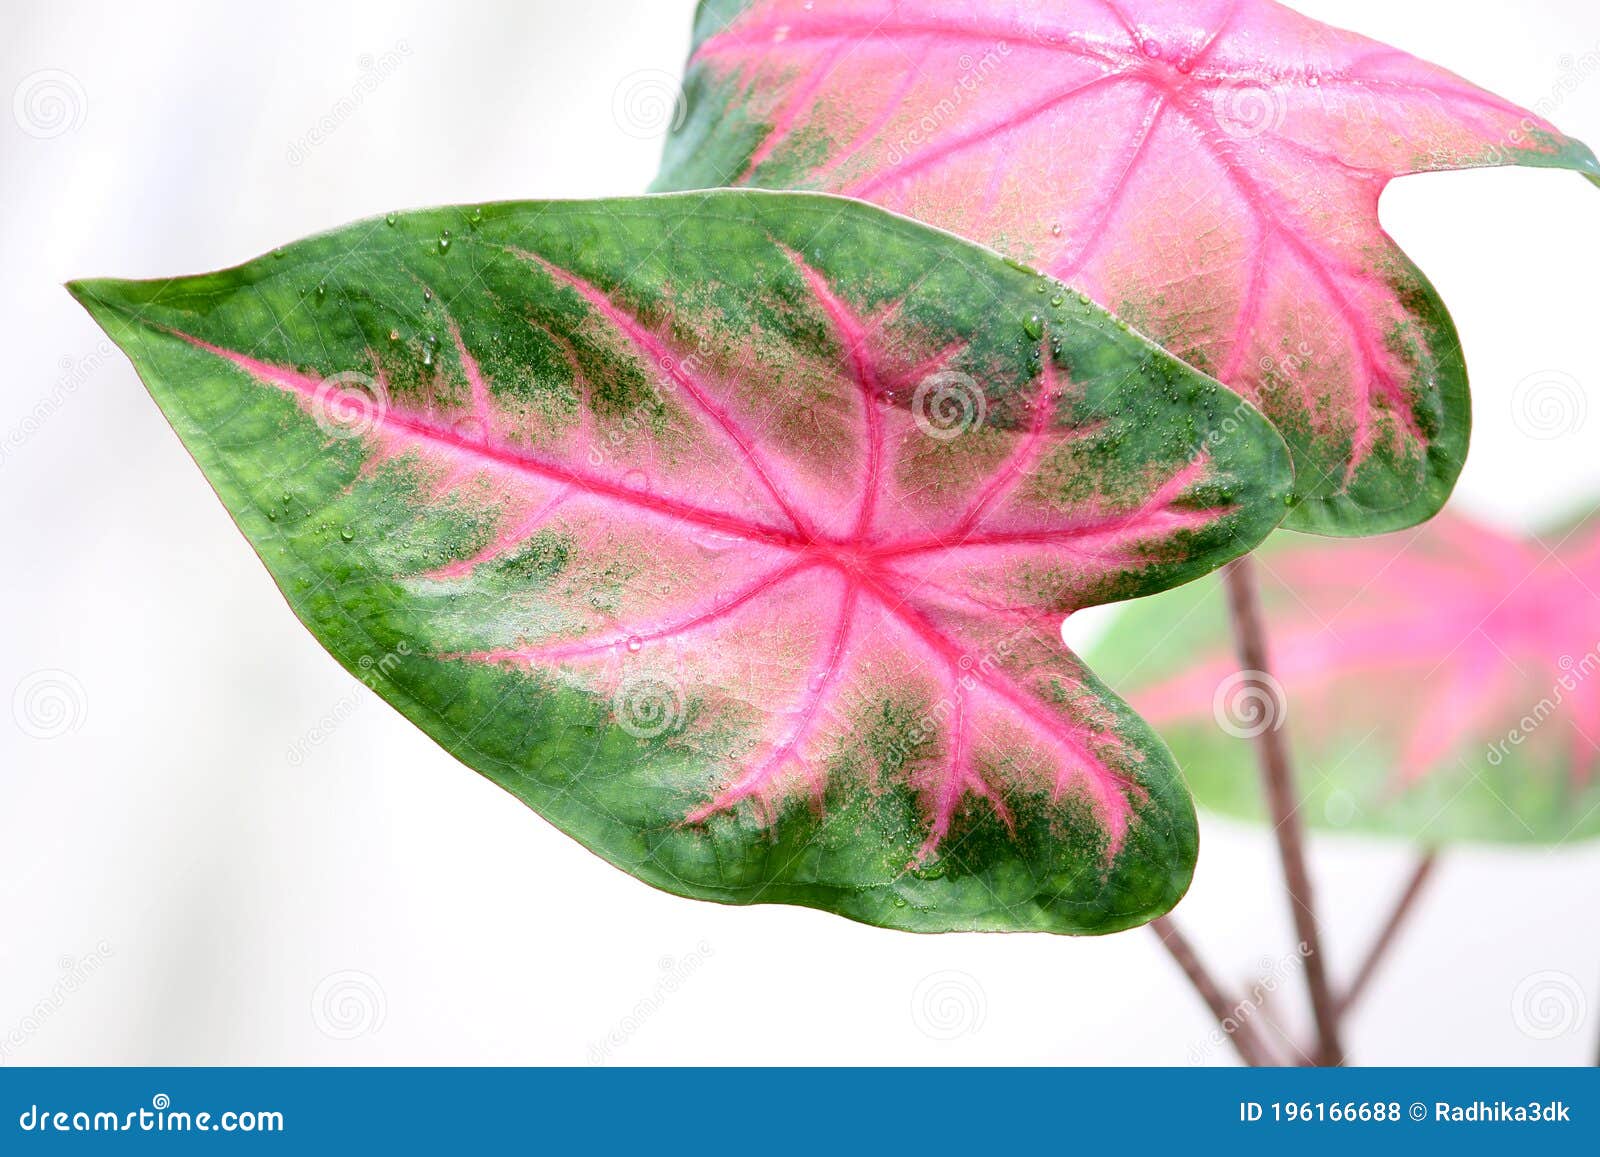 Heart Shape Caladium Plant Angel Wings Stock Photo - Image of isolated ...